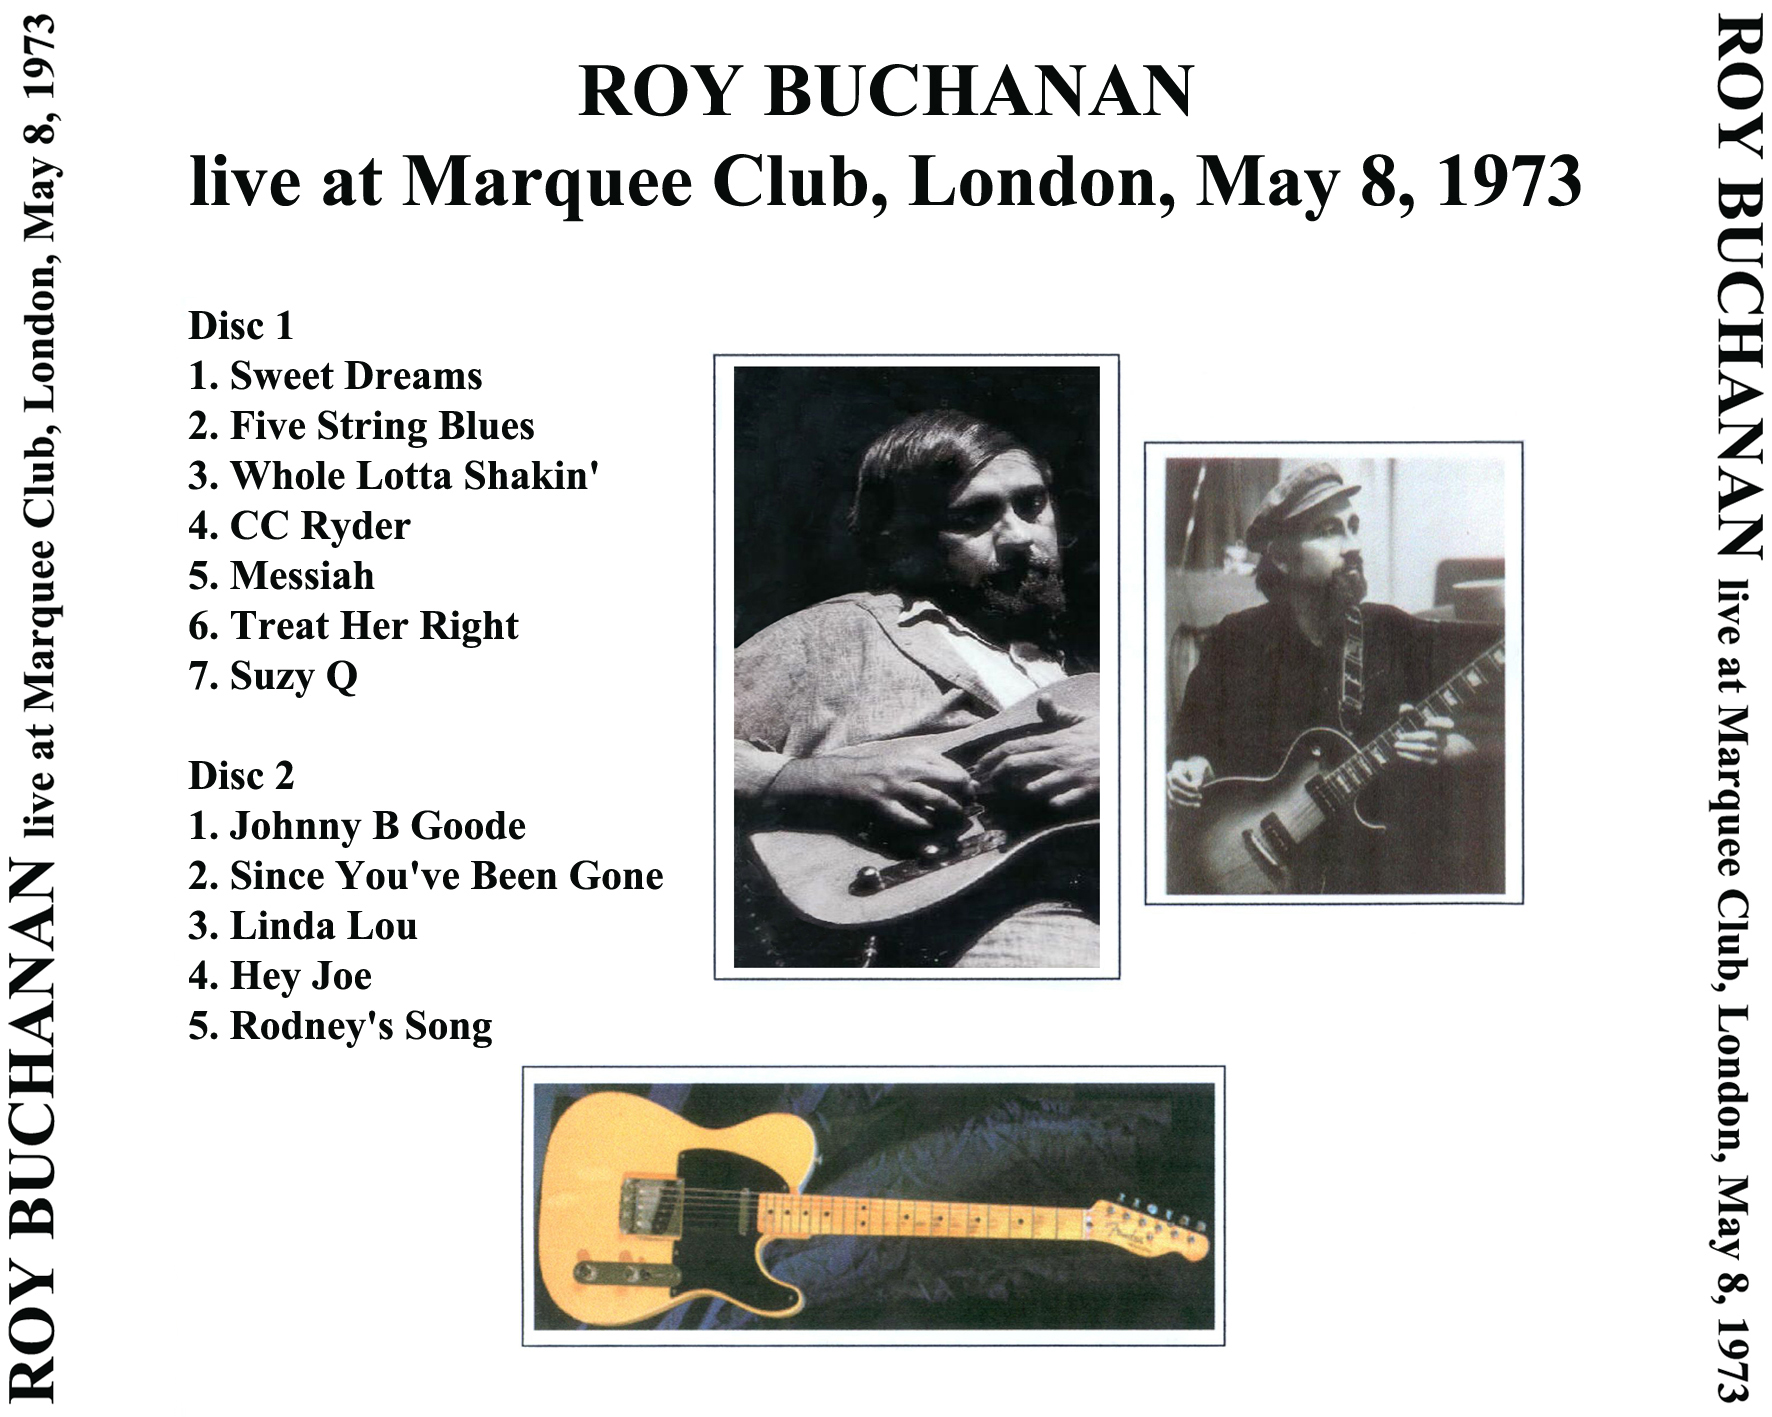 roy buchanan 1973 05 08 marquee club london enlarged tray 2 cd